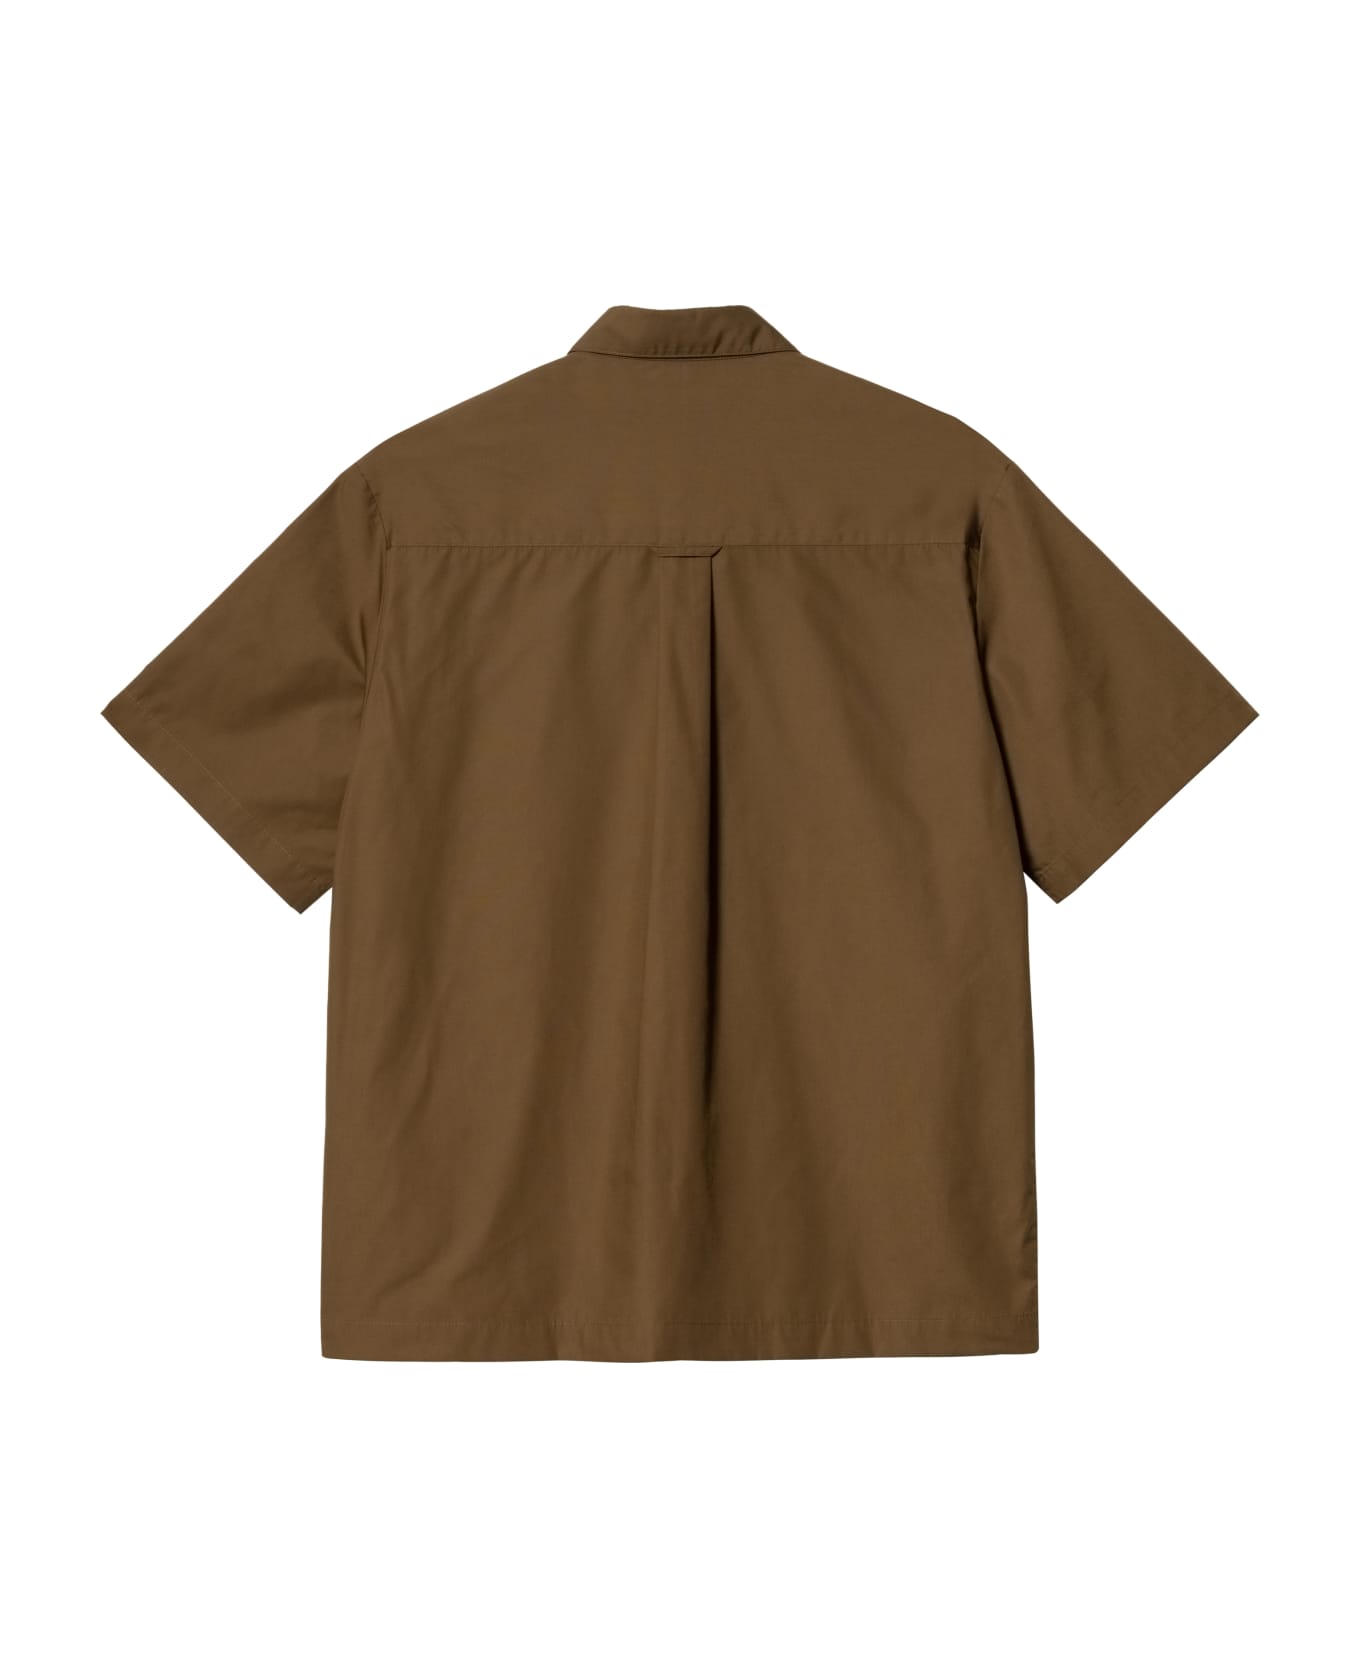 Carhartt S S Craft Shirt - Zdxx Lumber シャツ